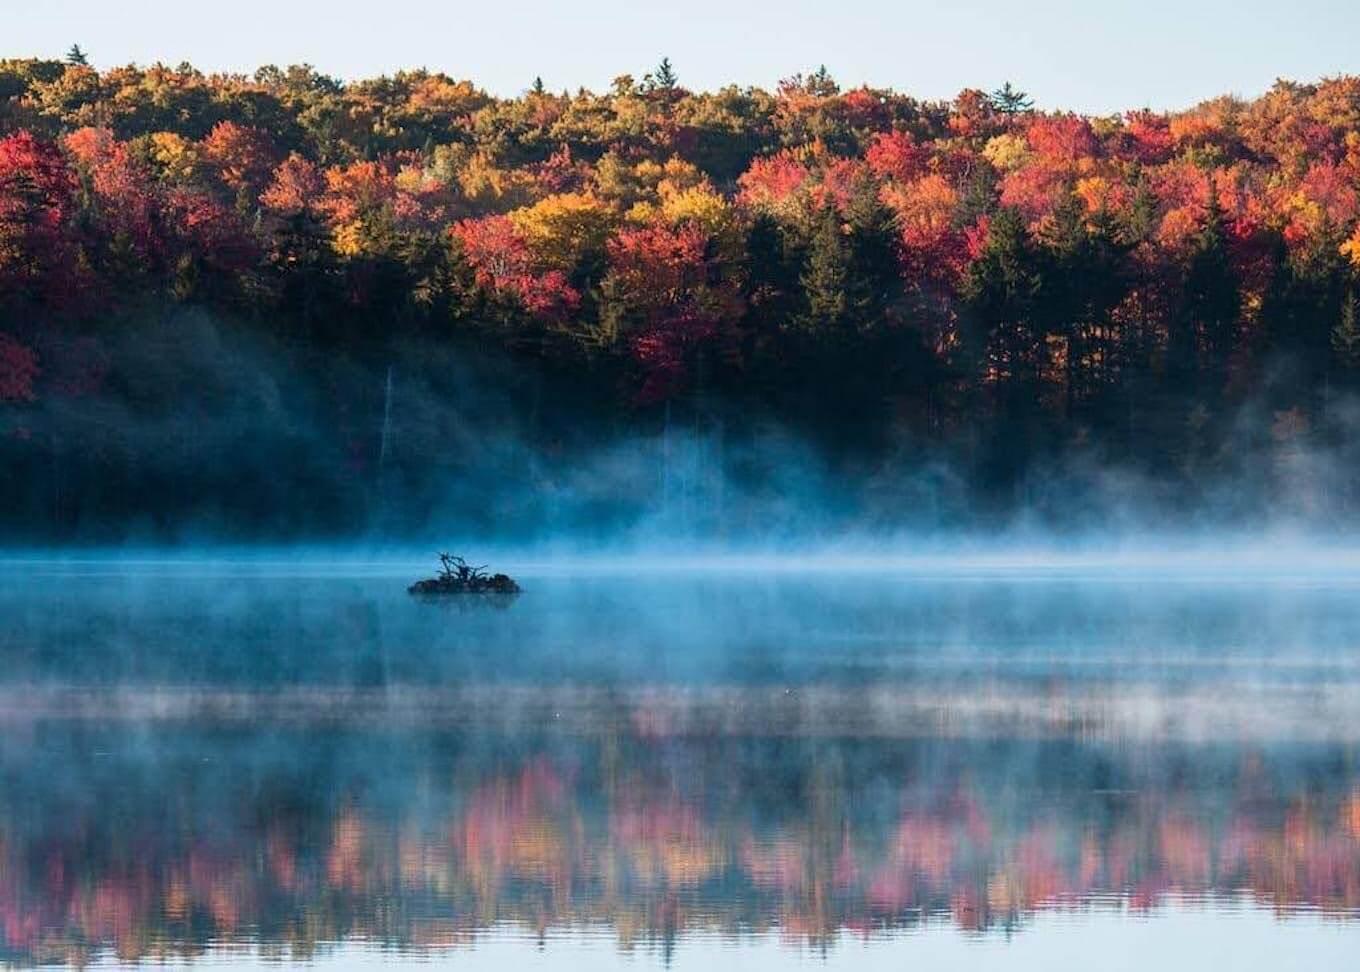 Una escena de fotografía forestal que muestra el follaje de otoño y la niebla que se eleva desde un lago cercano.